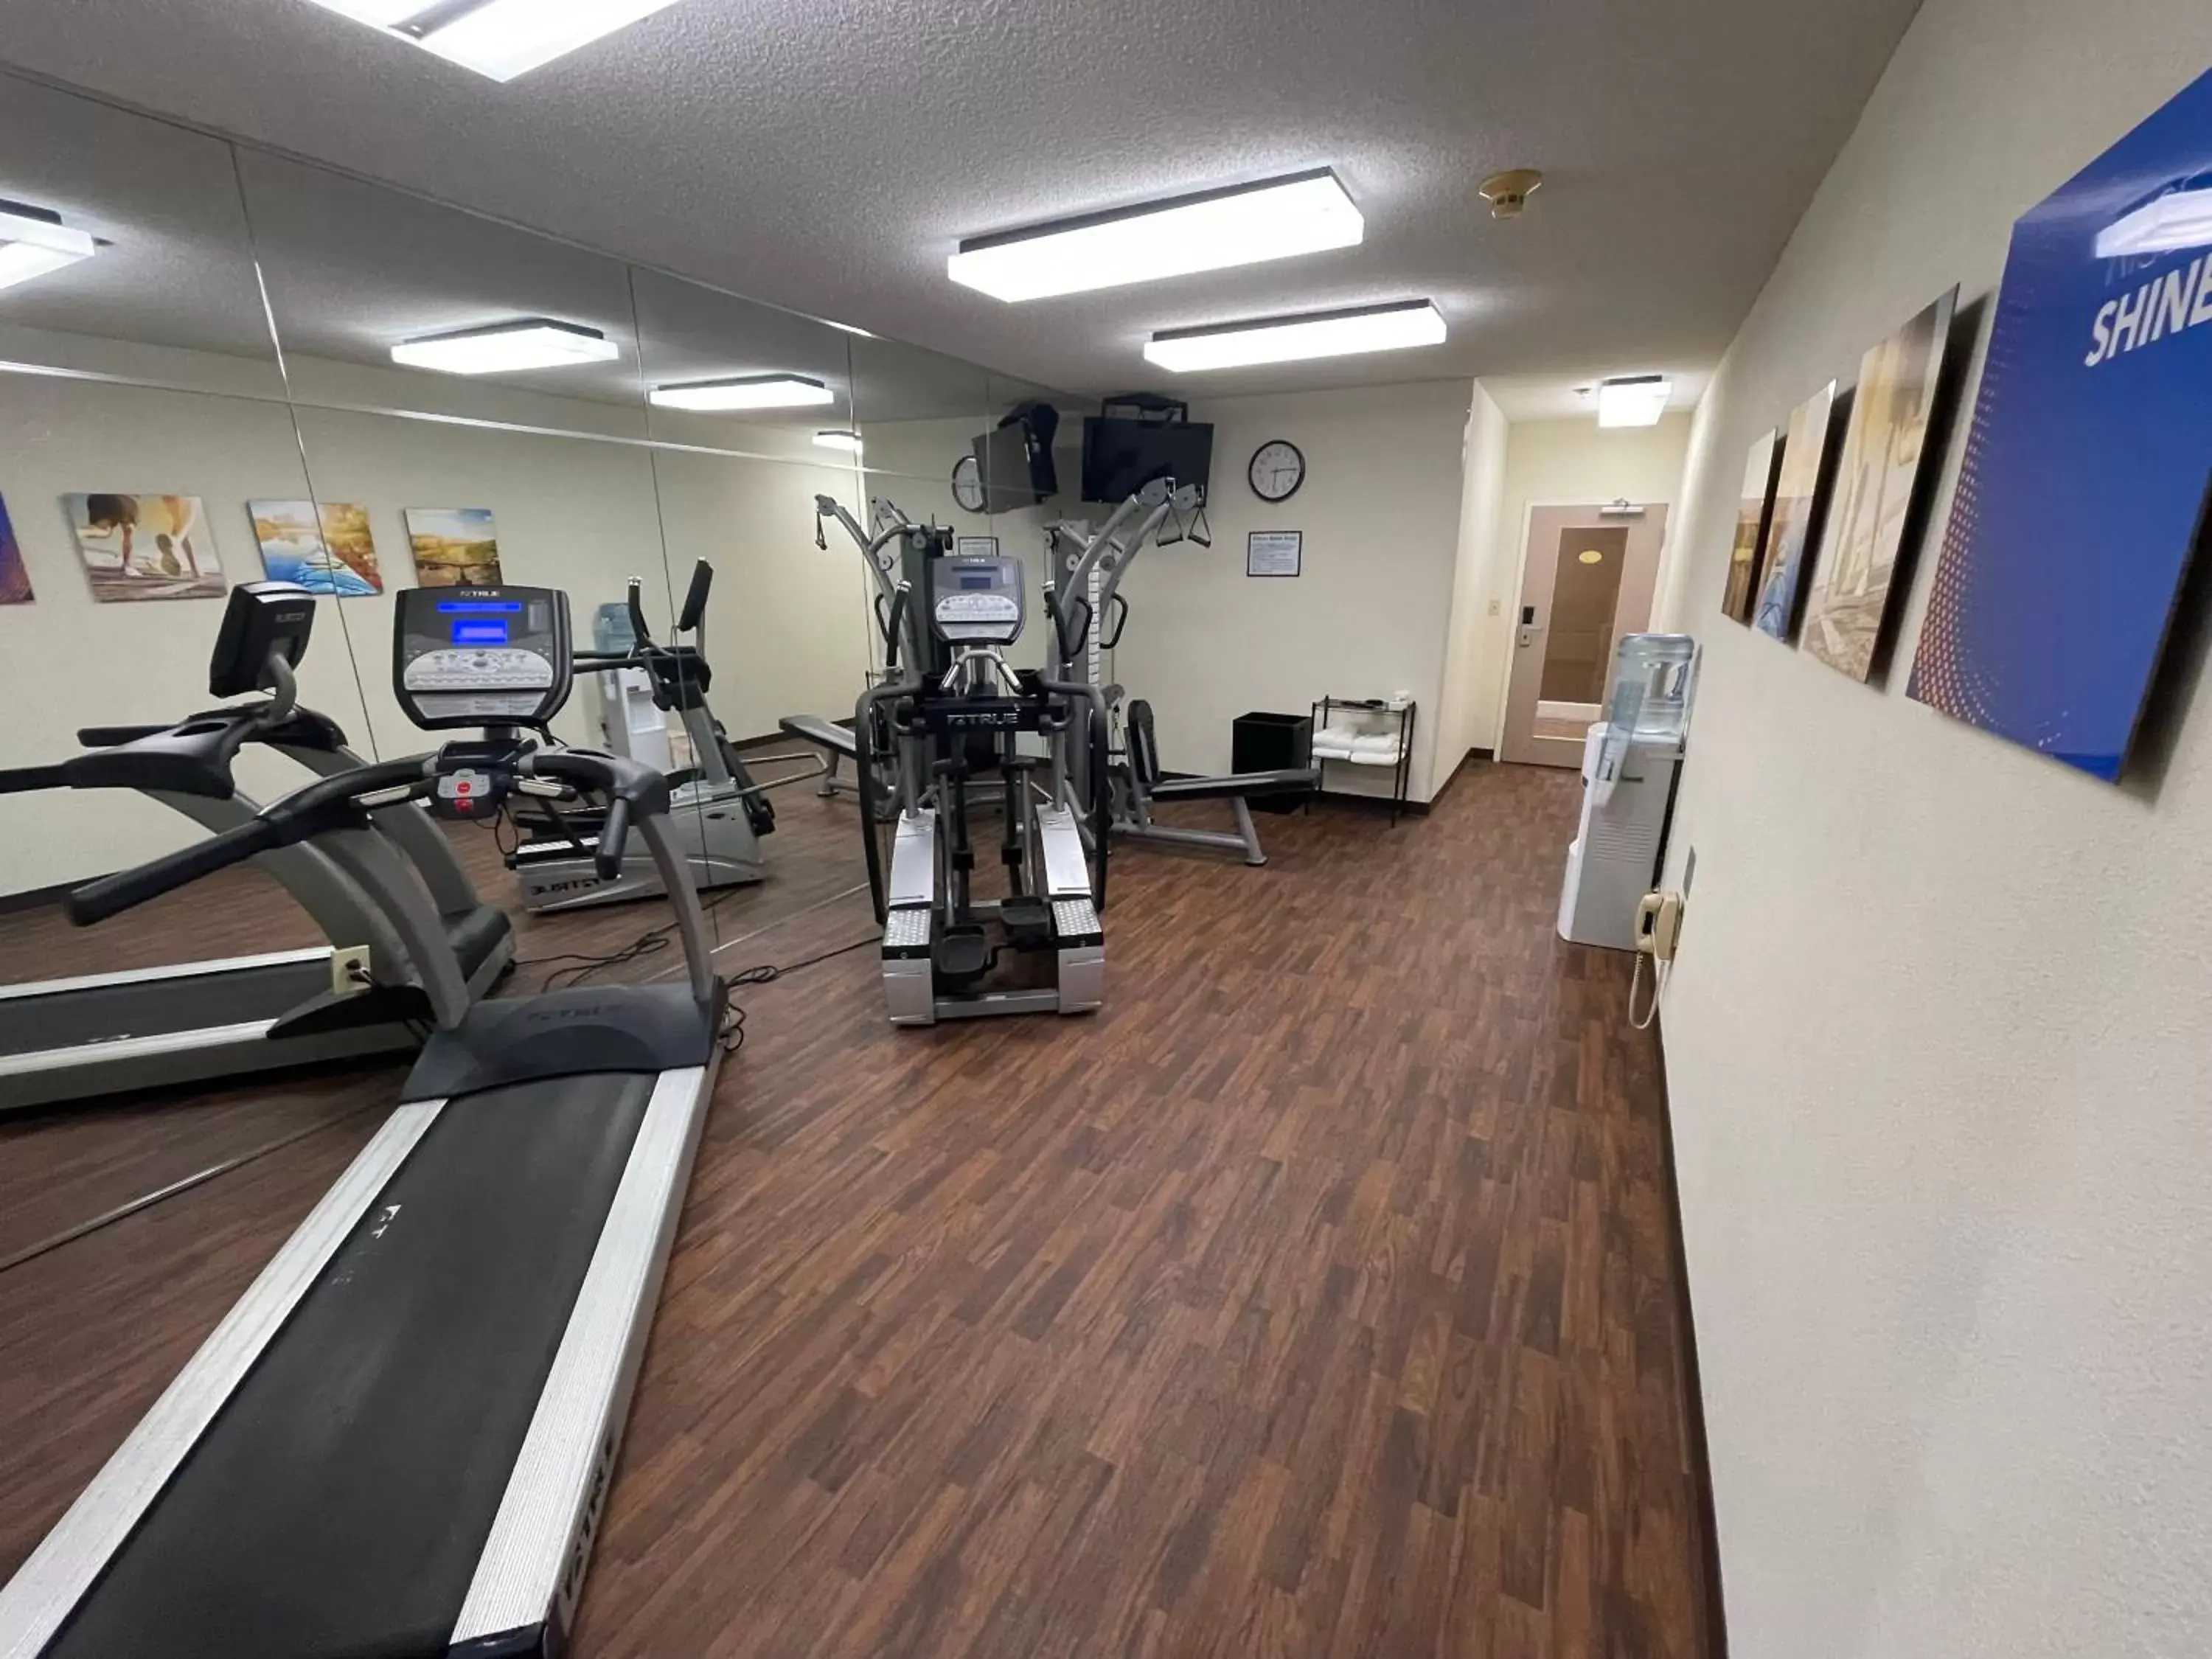 Fitness centre/facilities, Fitness Center/Facilities in Comfort Inn Pinehurst